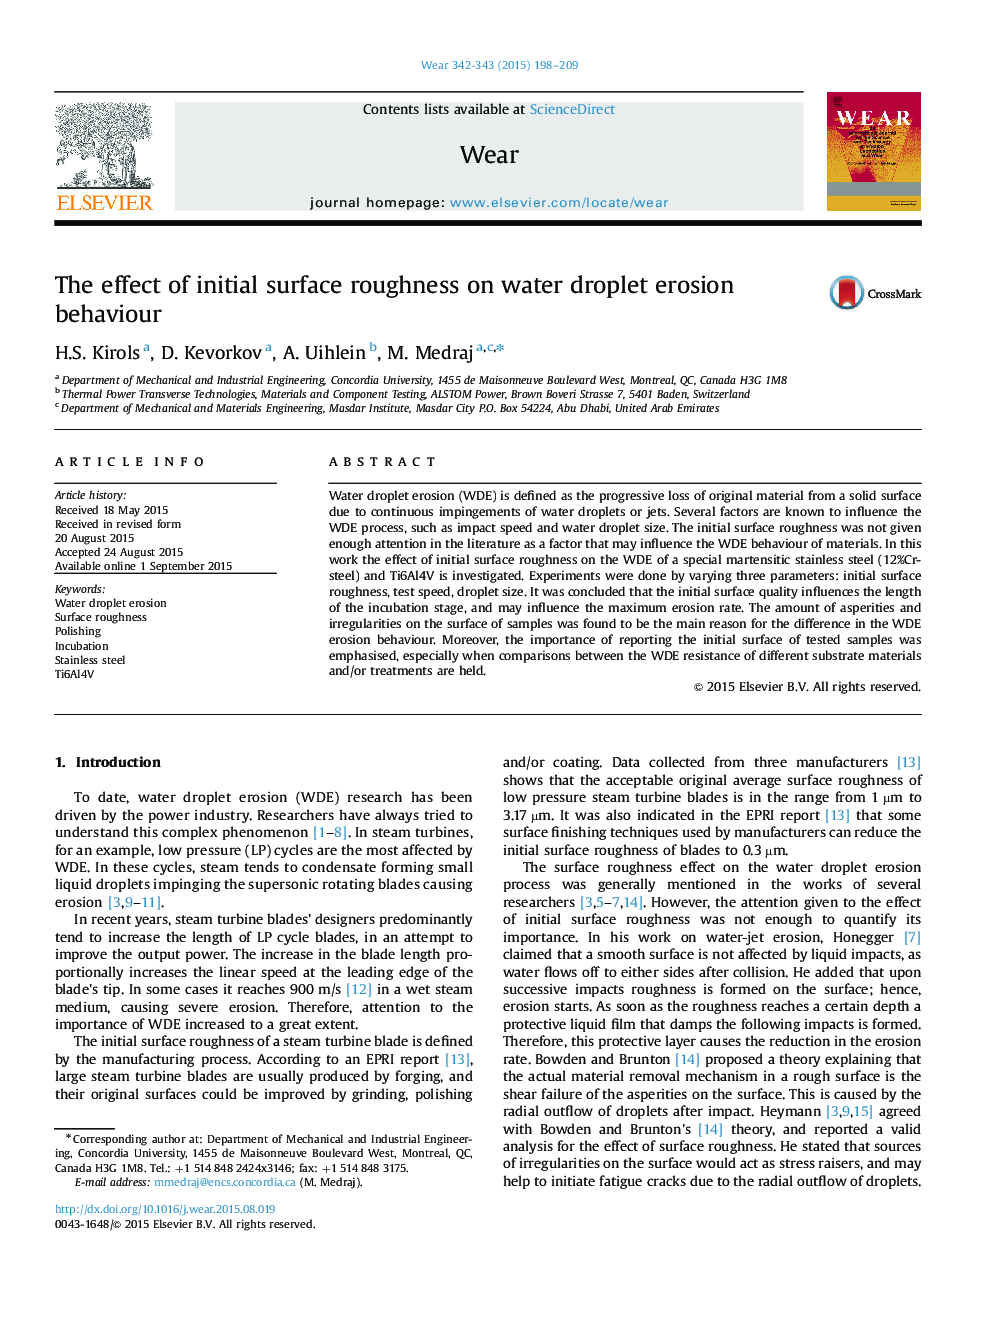 اثر زبری سطح اولیه بر رفتار فرسایشی قطرات آب 